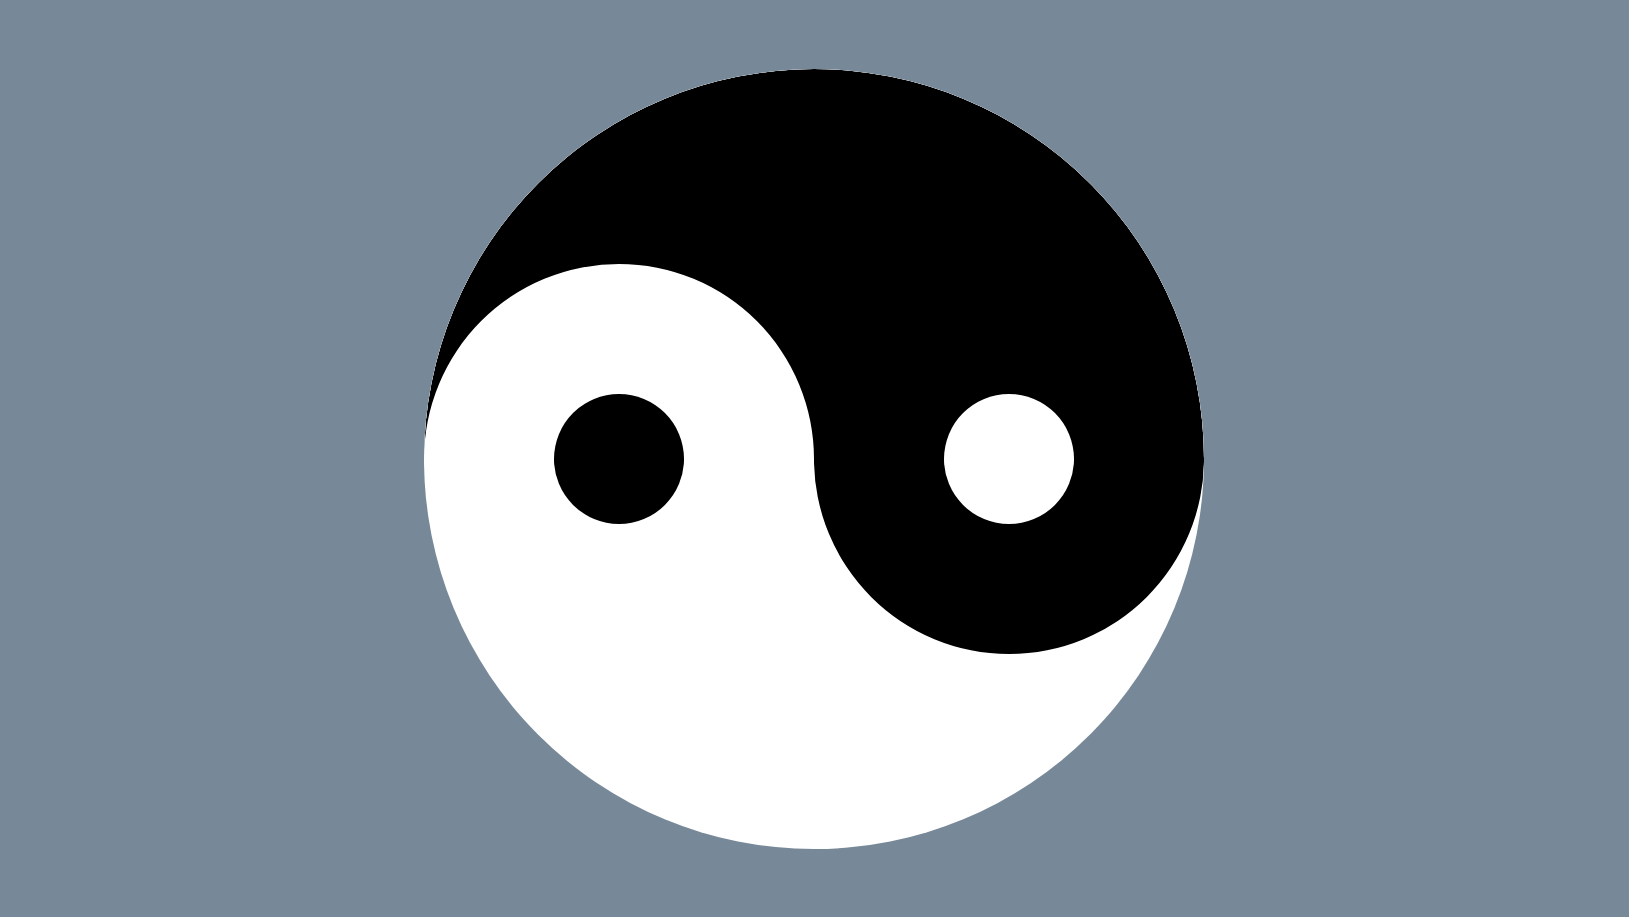 Yin Yang Black and White Box Logo - Creating Yin and Yang Loaders On the Web